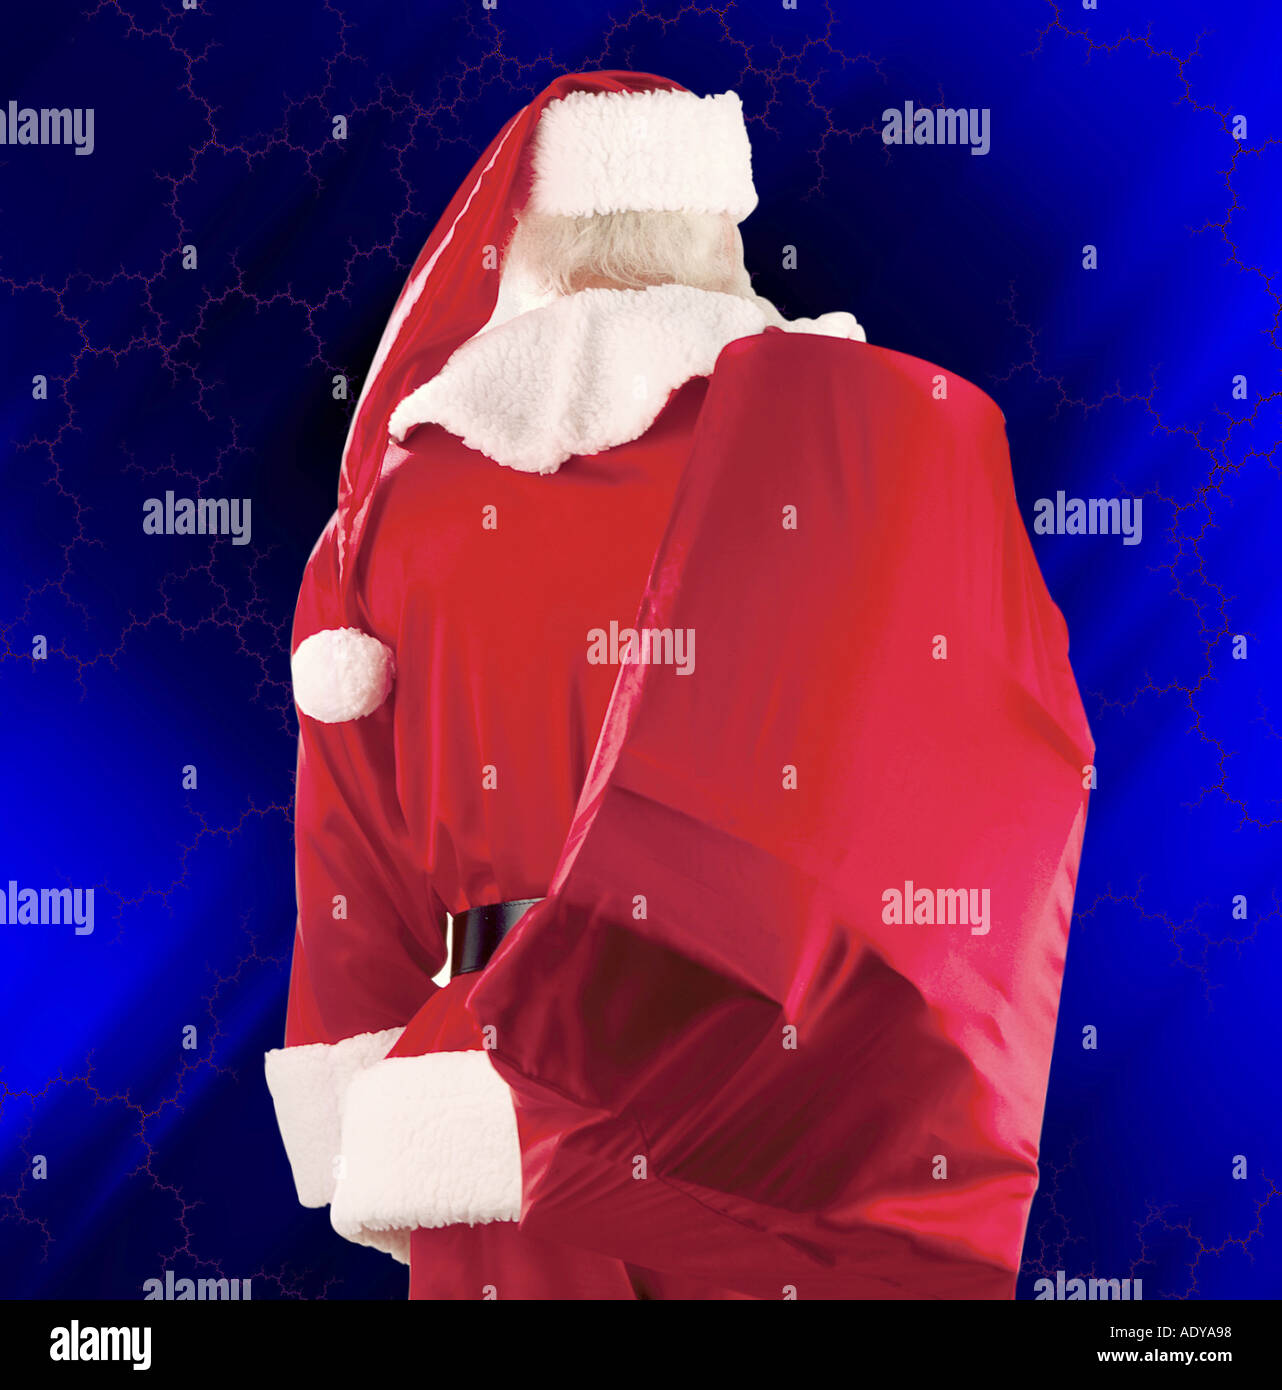 Feiern ich katholischer Feiertag Tasche Kostüm Rückseite zurück x Mas Noel Klaus Geschenk Geschenke vorhanden präsentiert Weihnachten feiern ch Stockfoto